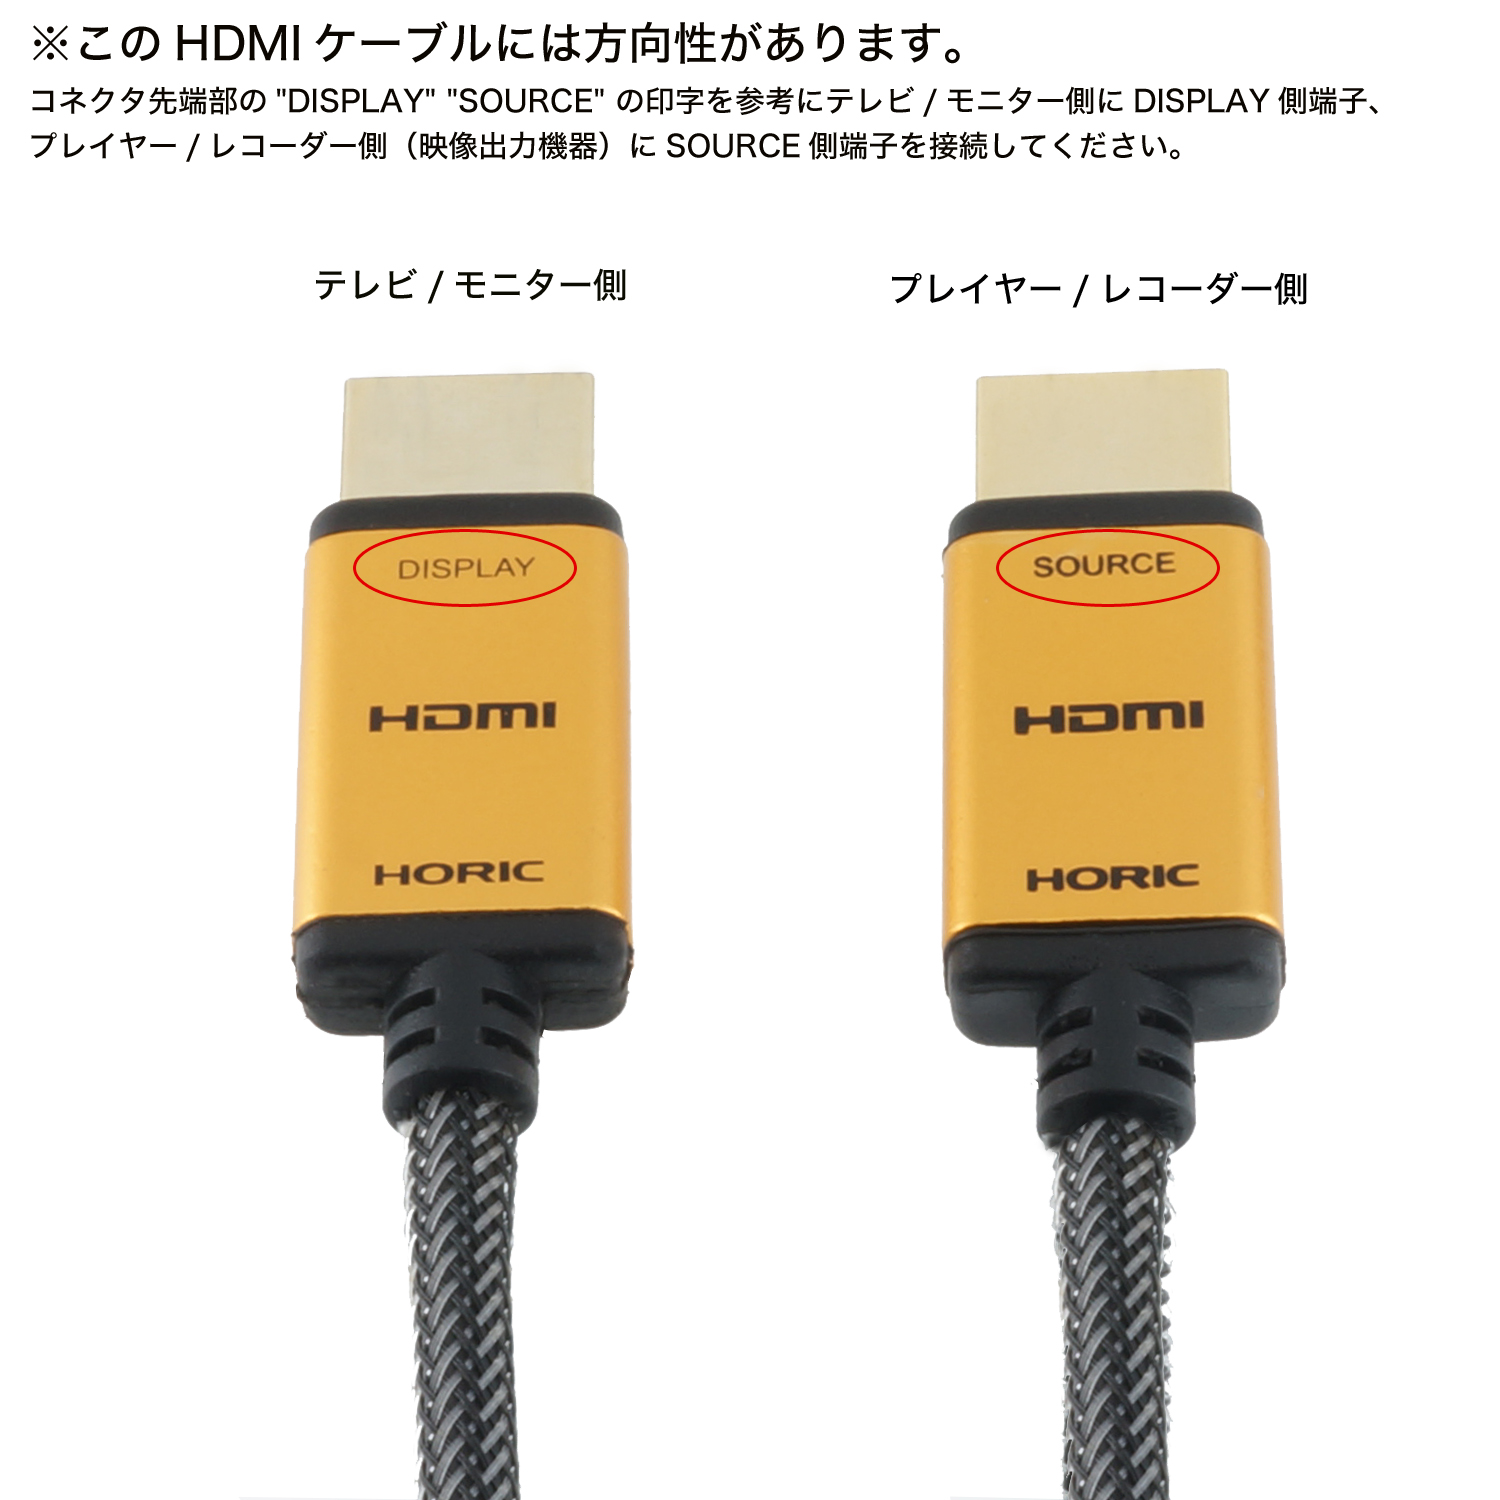 サンワサプライ 3D対応 HDMI光ファイバーケーブル 20m KM-HD20-FB20K 通販 